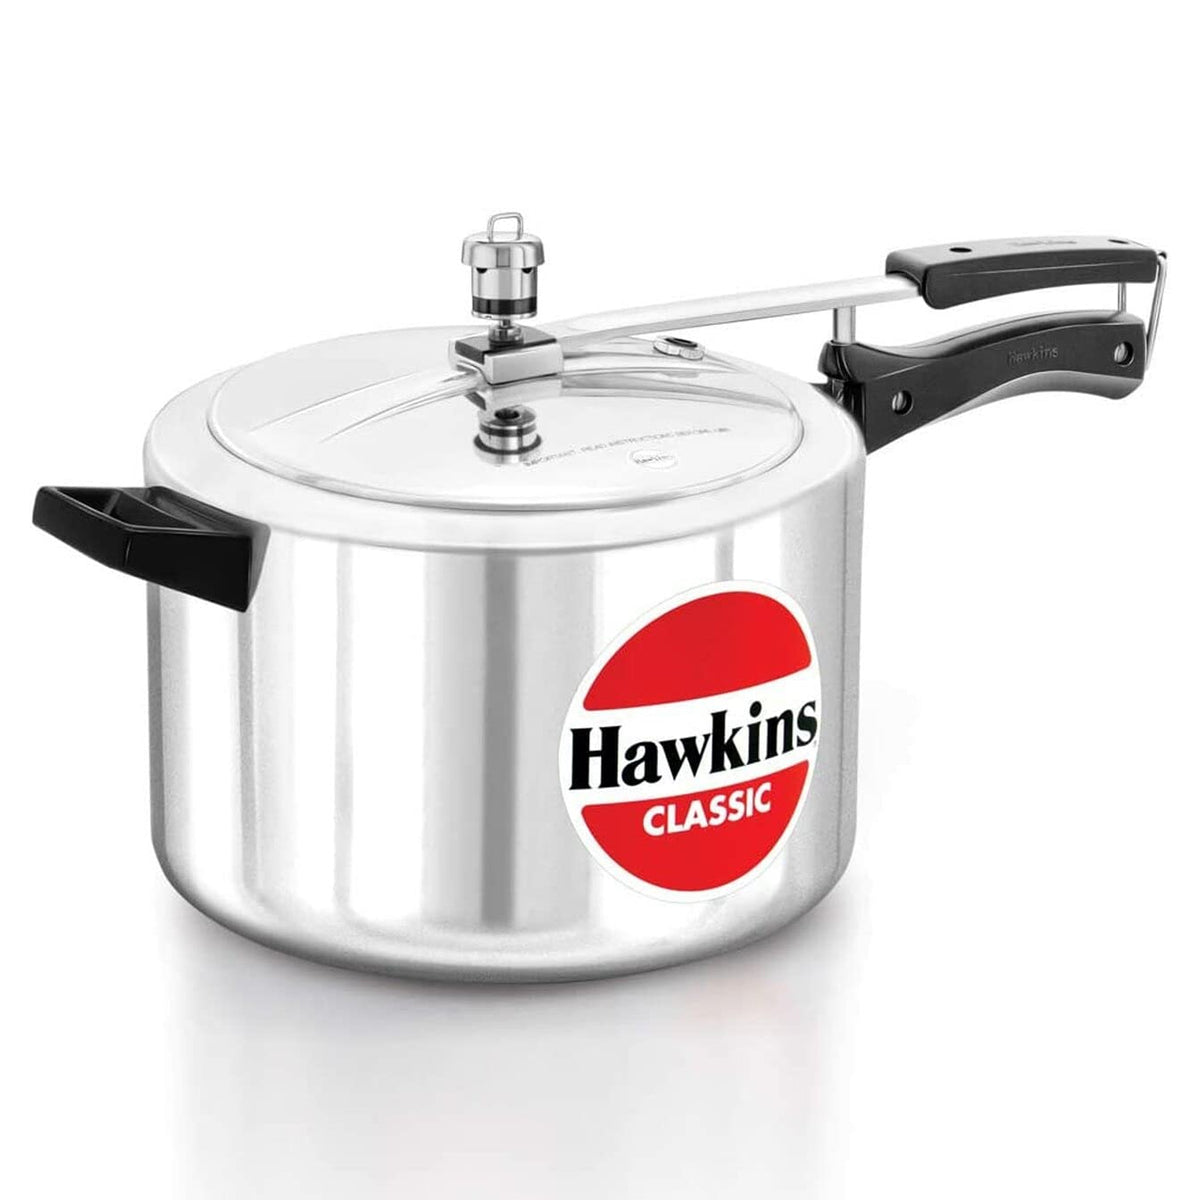 Hawkins Pressure Cooker - CLASSIC - Silver - 8 L Wide